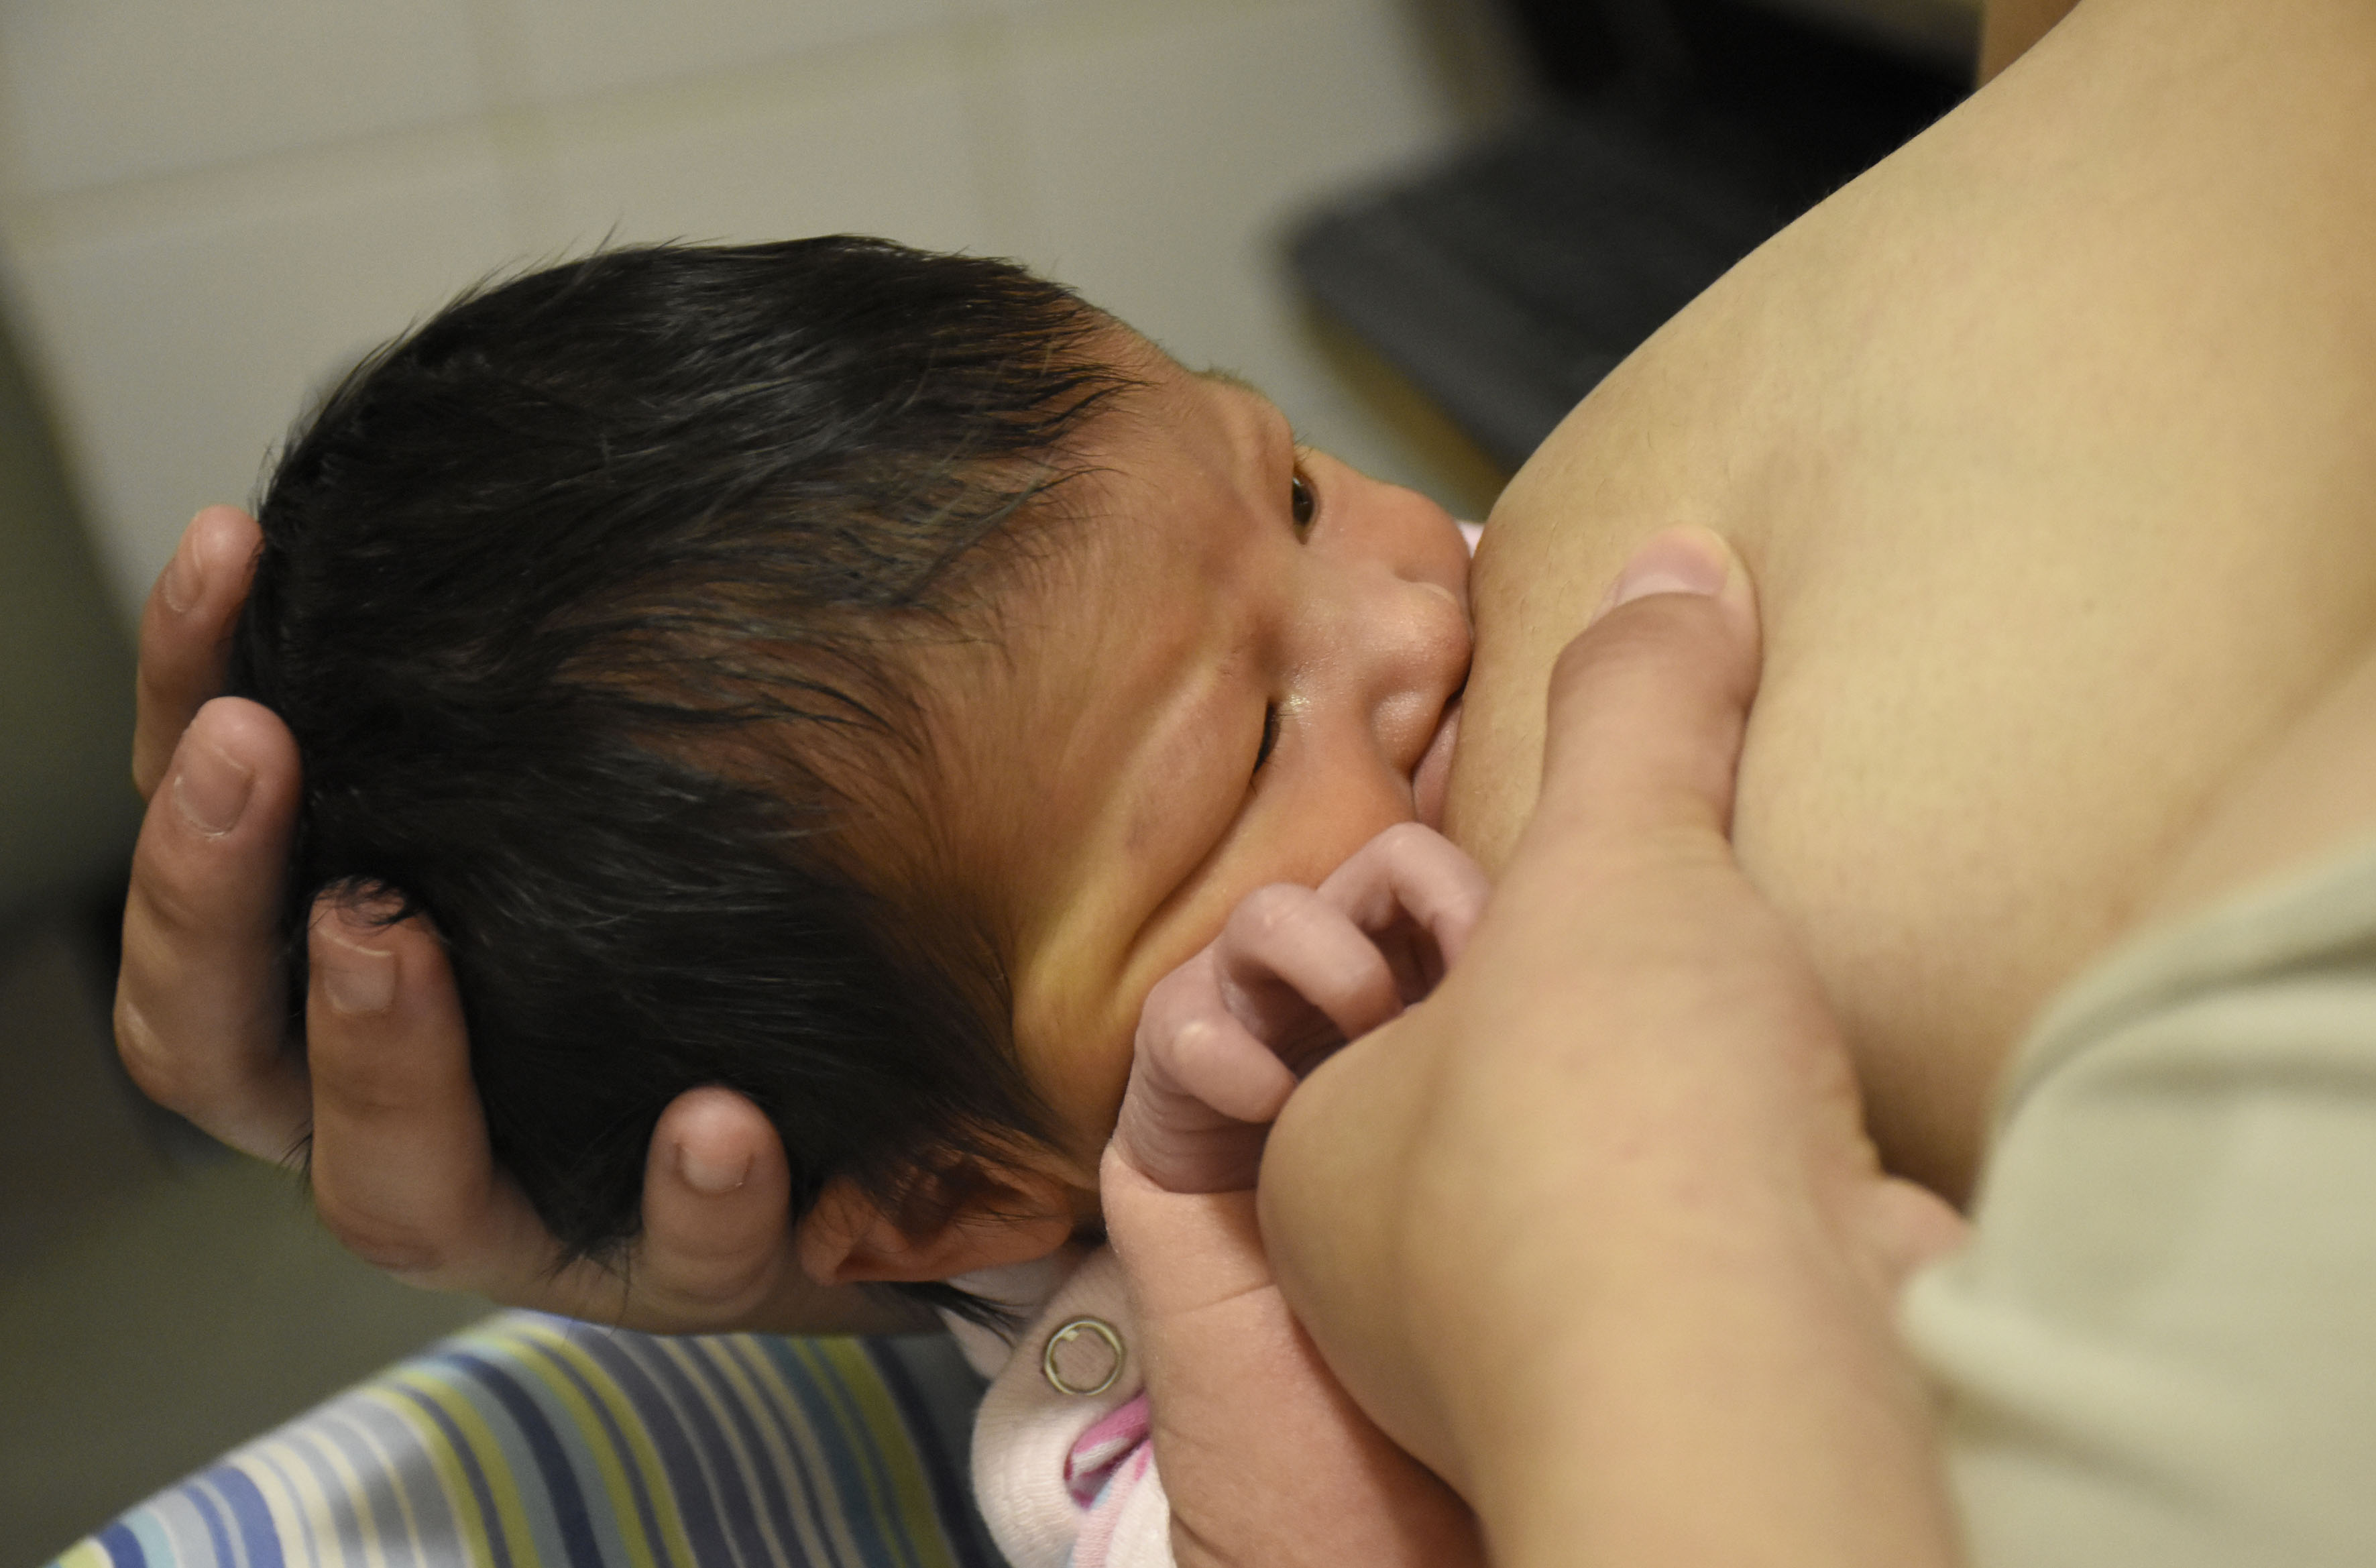 La semana de la lactancia materna promueve la importancia de dar la teta. Foto: Florencia Salto)